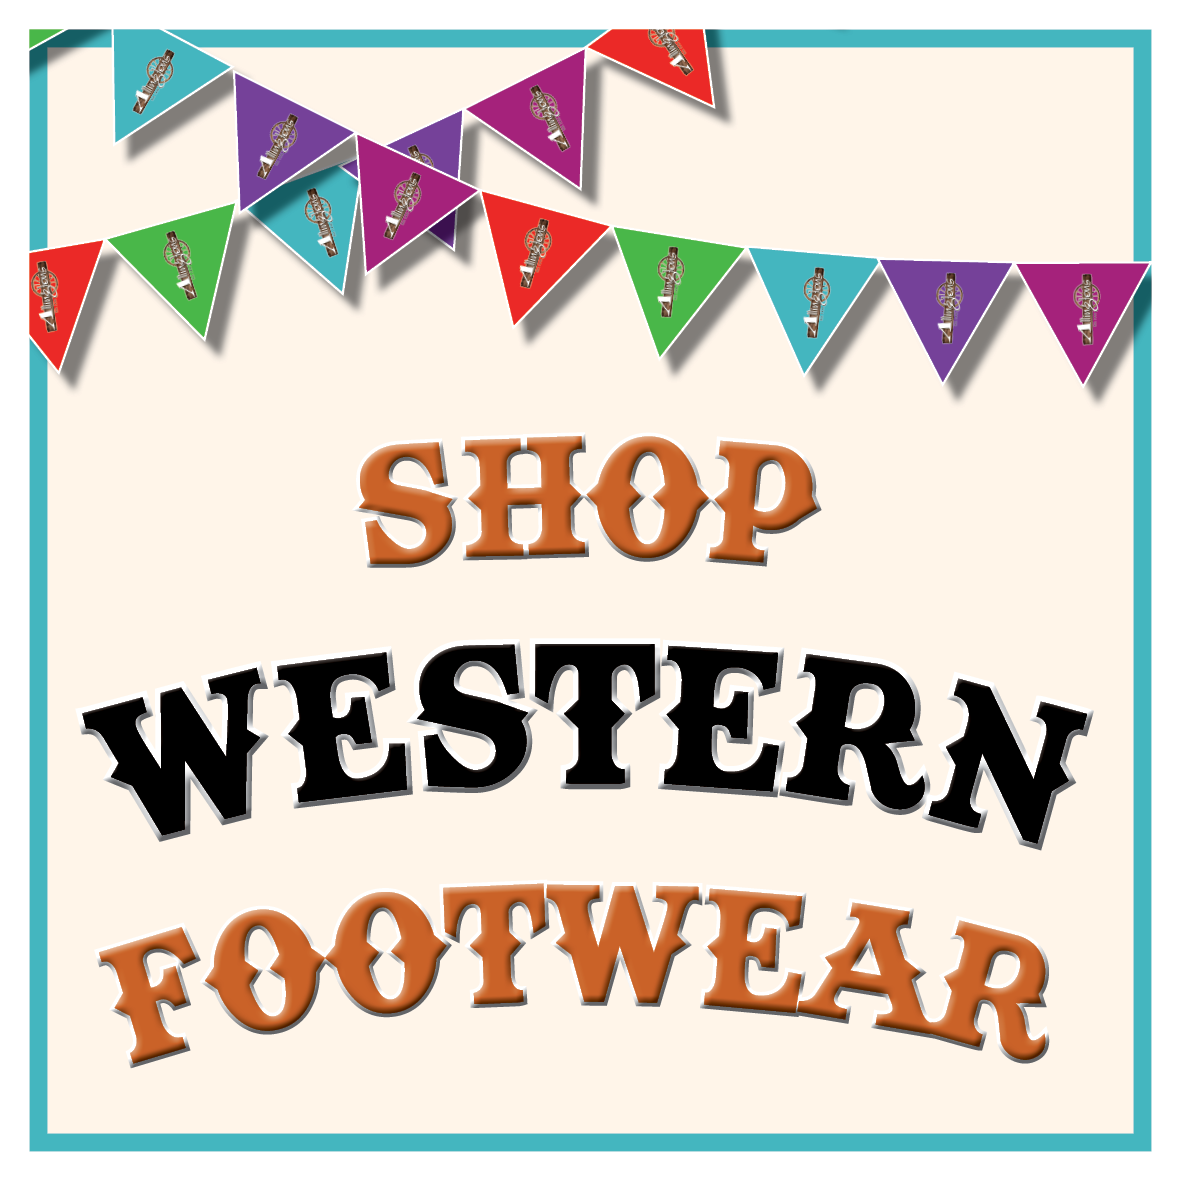 Shop Western Footwear